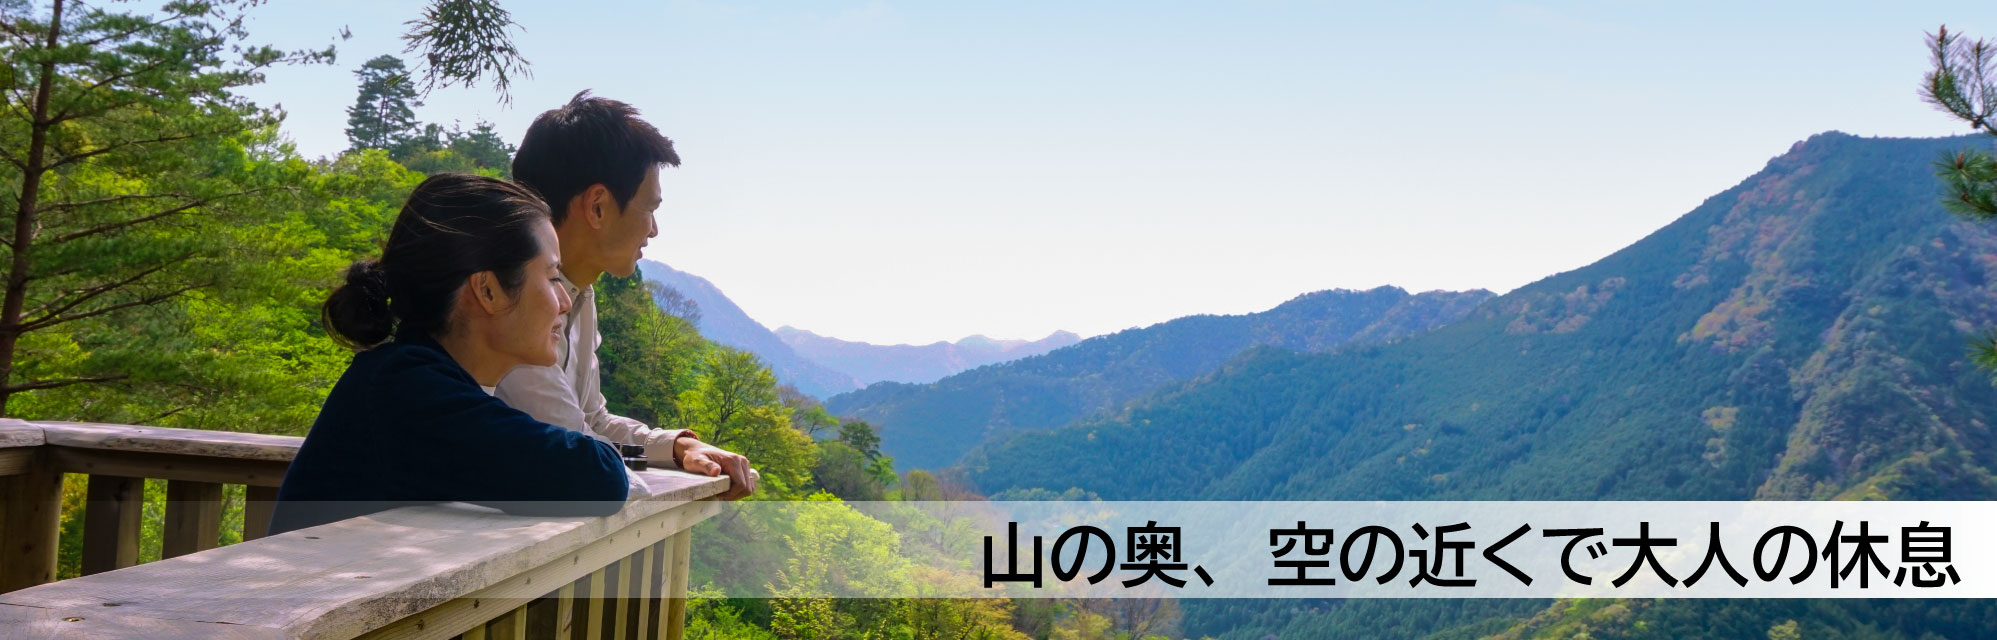 奈良県観光 公式サイト あをによし なら旅ネット